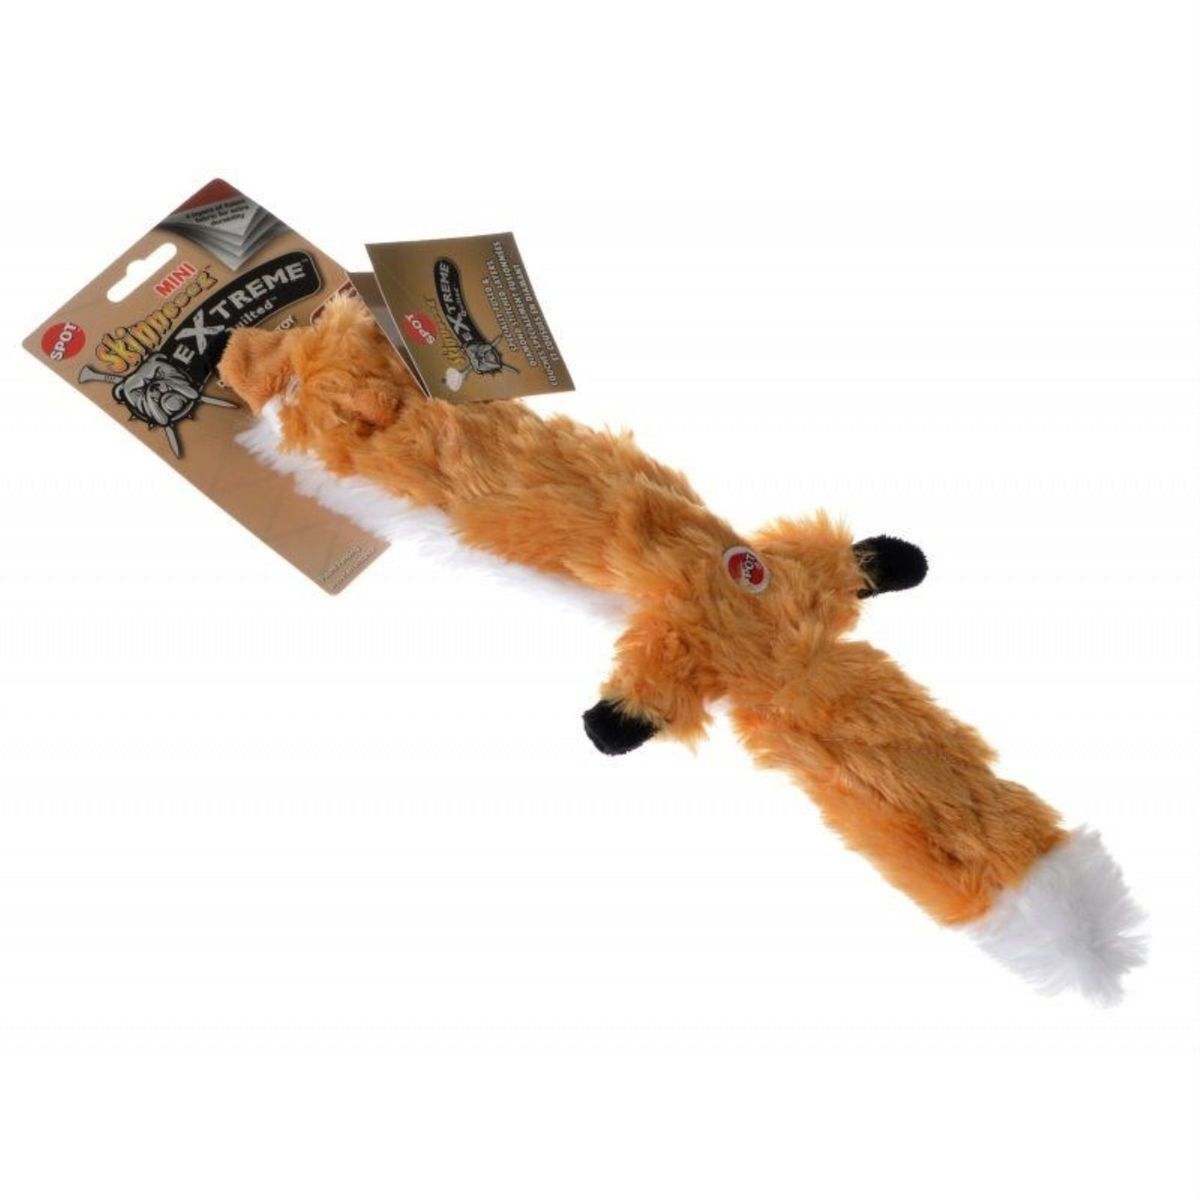 [送料無料] SPOT Skinneeez エクストリーム・キルティング・プラッシュ・フォックス 犬用おもちゃ 14インチ [楽天海外通販] | SPOT Skinneeez Extreme Quilted Plush Fox Dog Toy, 14"